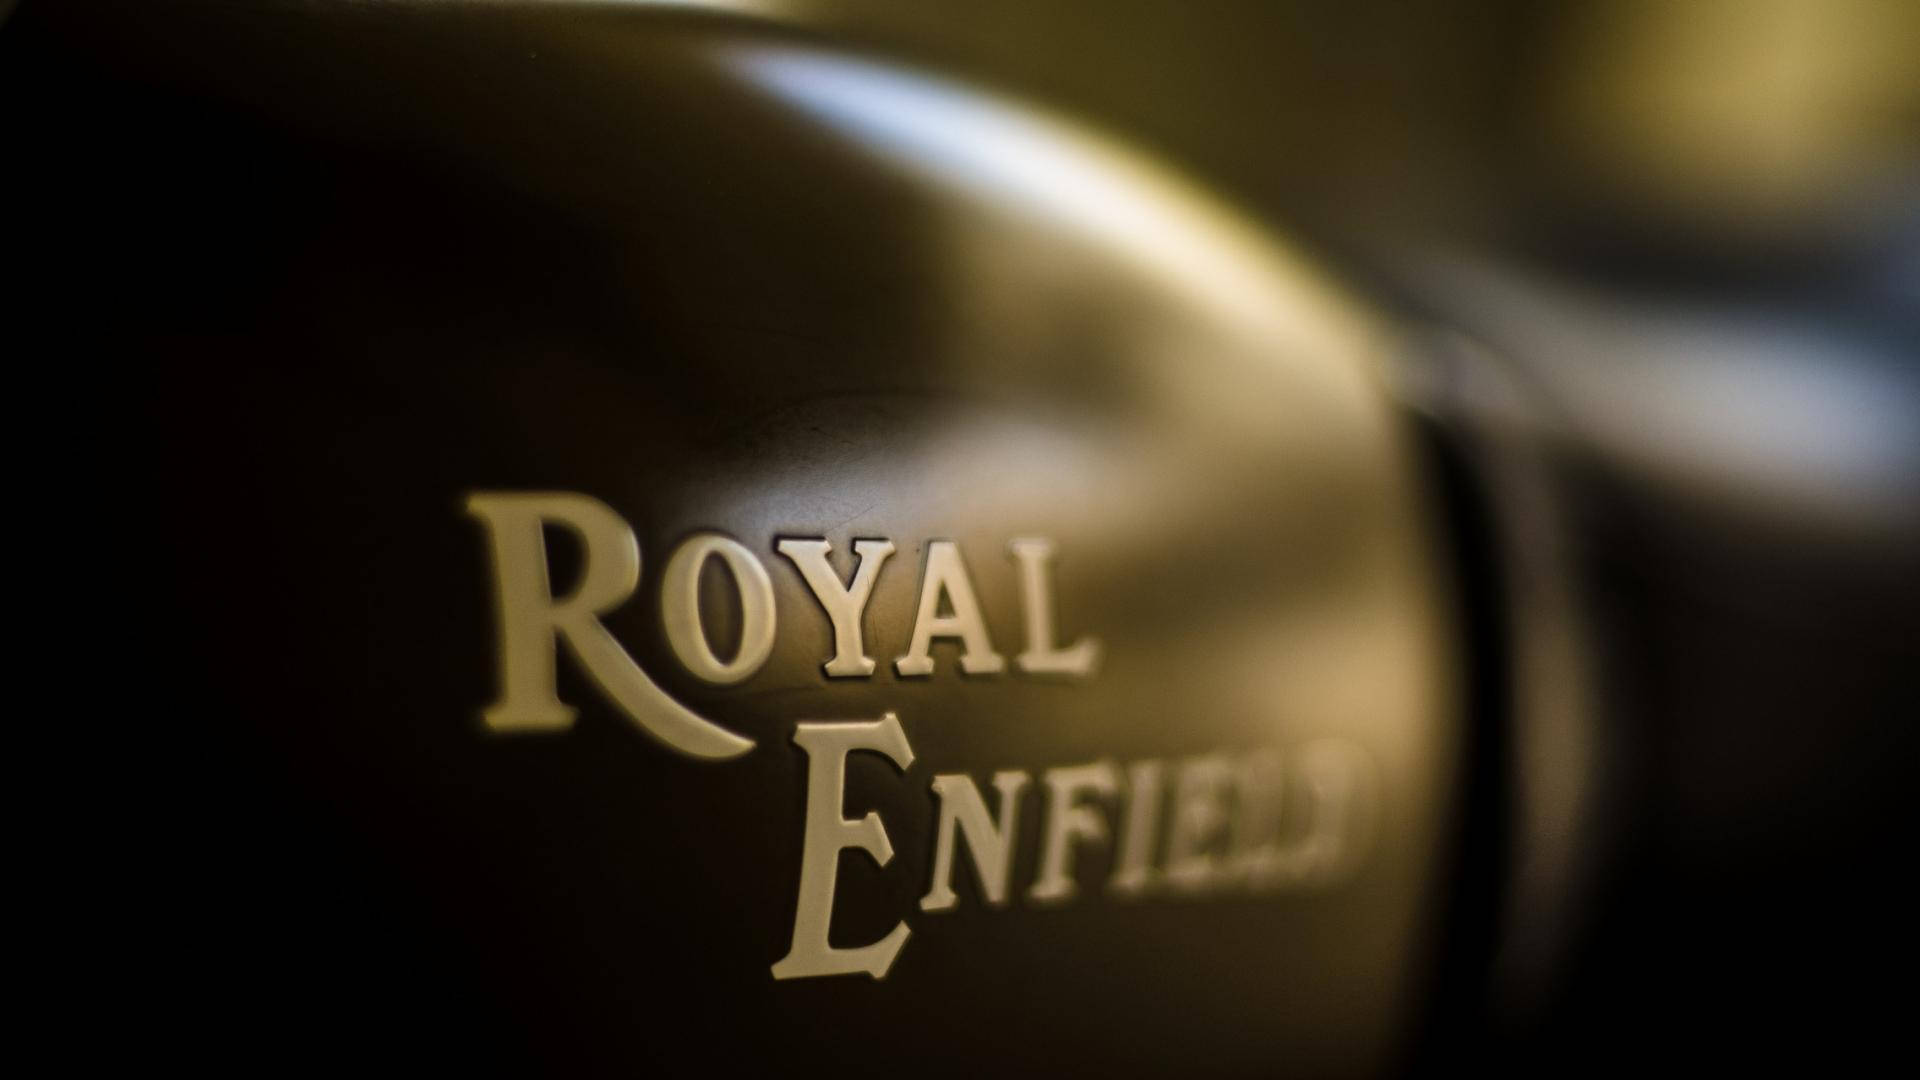 Royal Enfield HD Brand Name Closeup Wallpaper